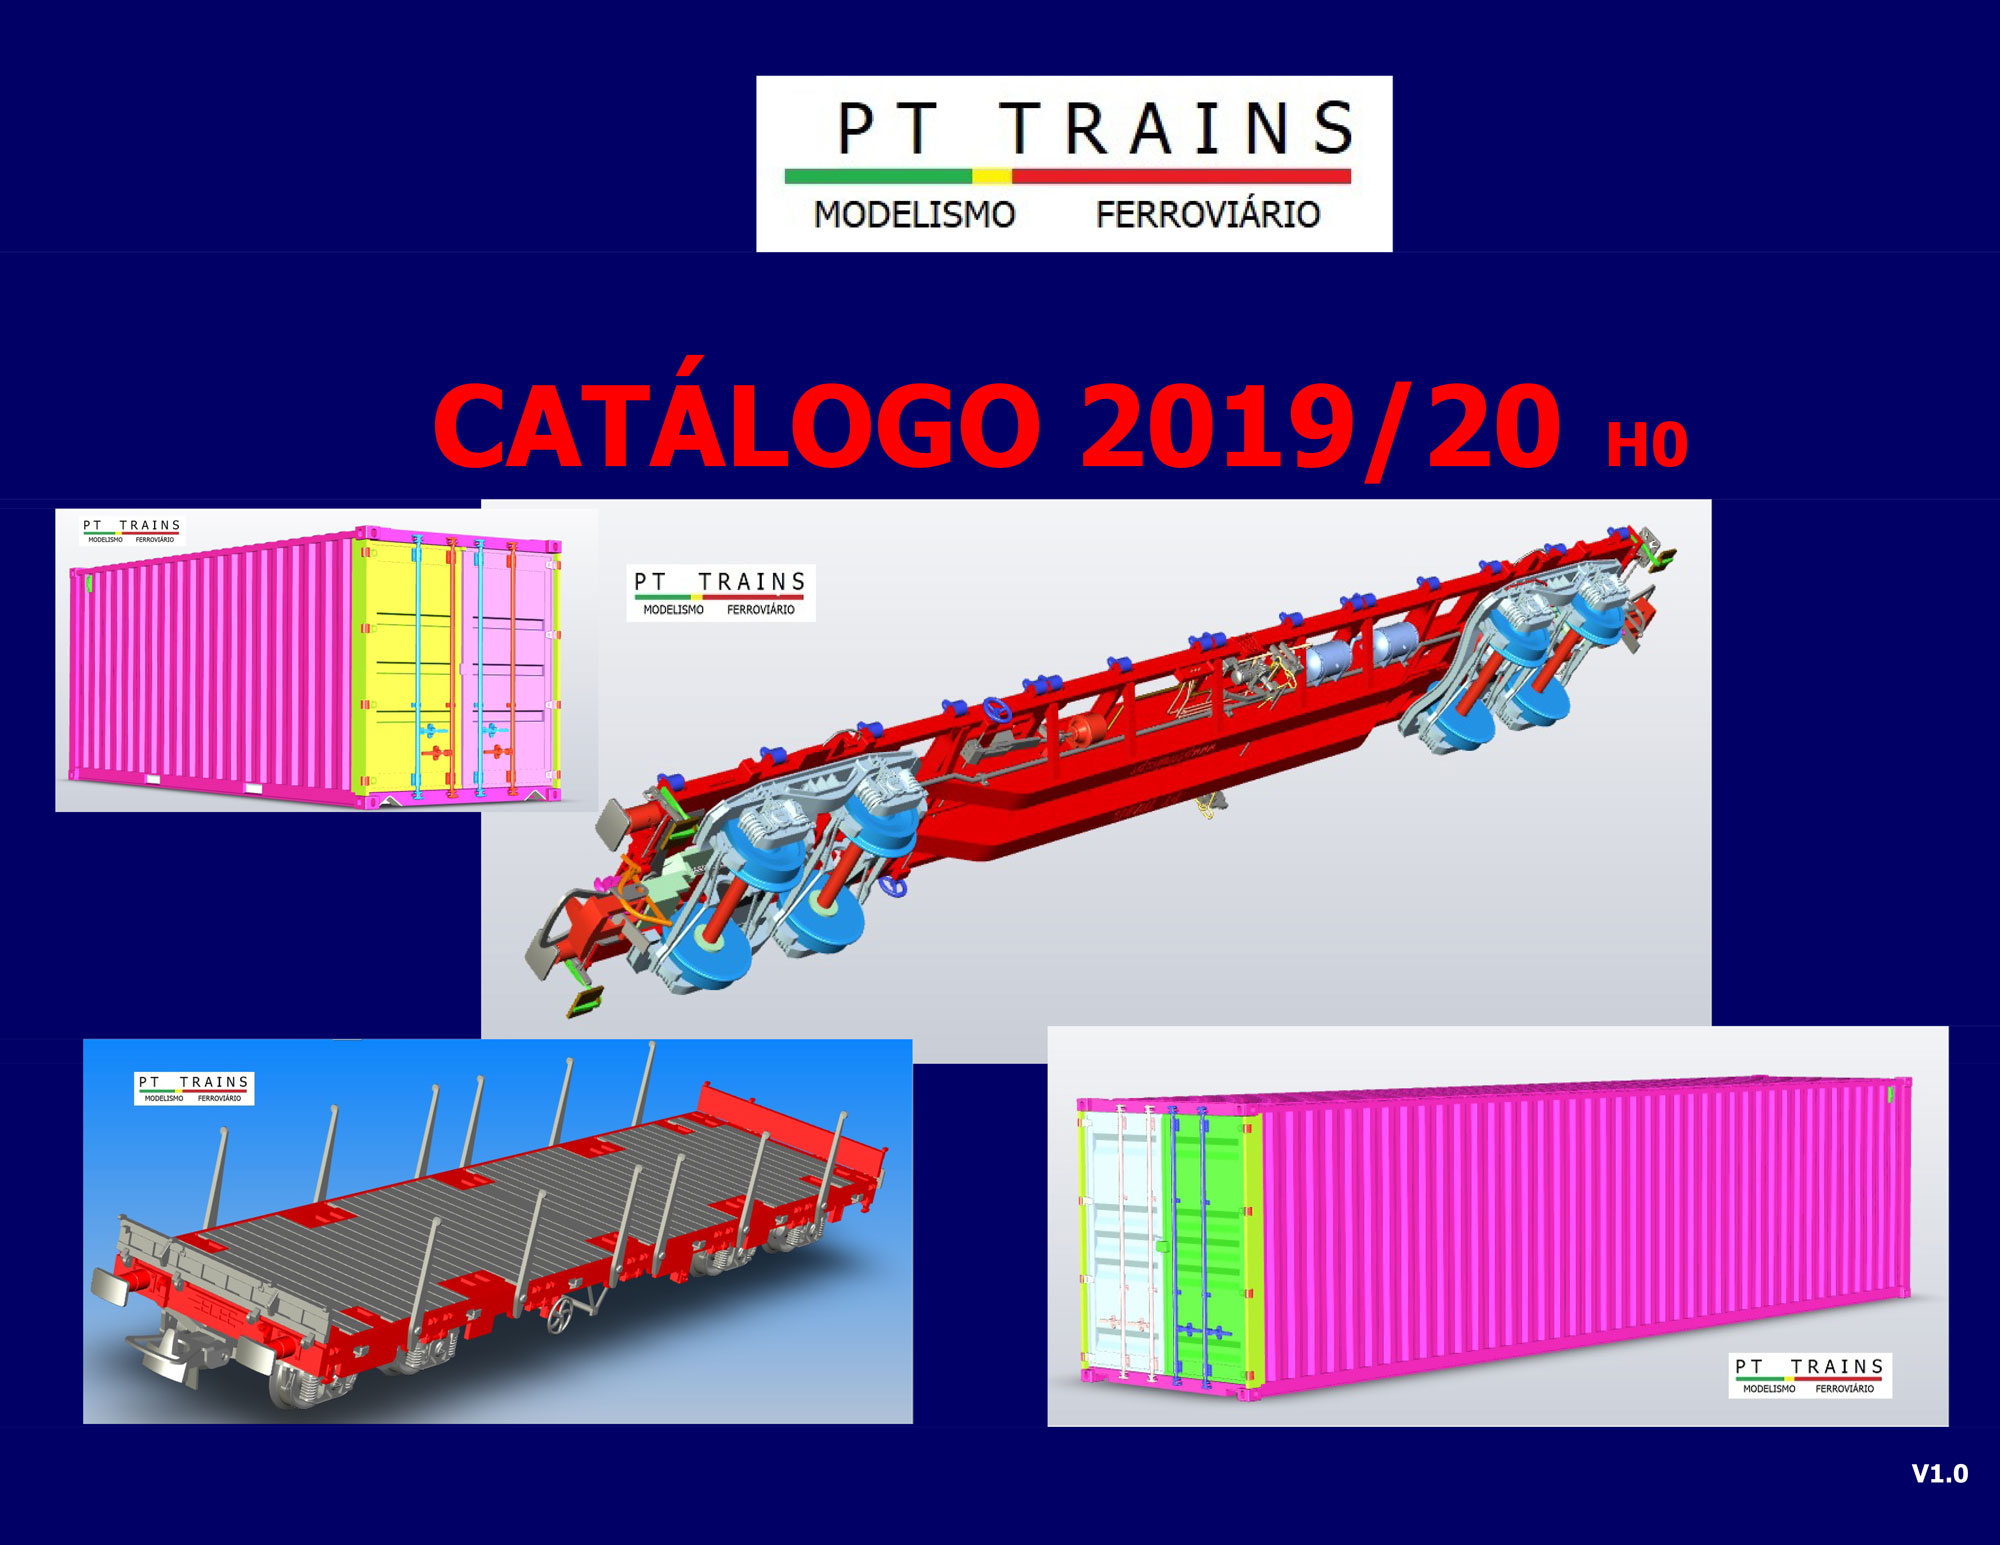 pt_trains_catalog_2019_-_2020_ho__1_87__en_fr_de_pt_es_2020_02_20200208175839 (1).jpg